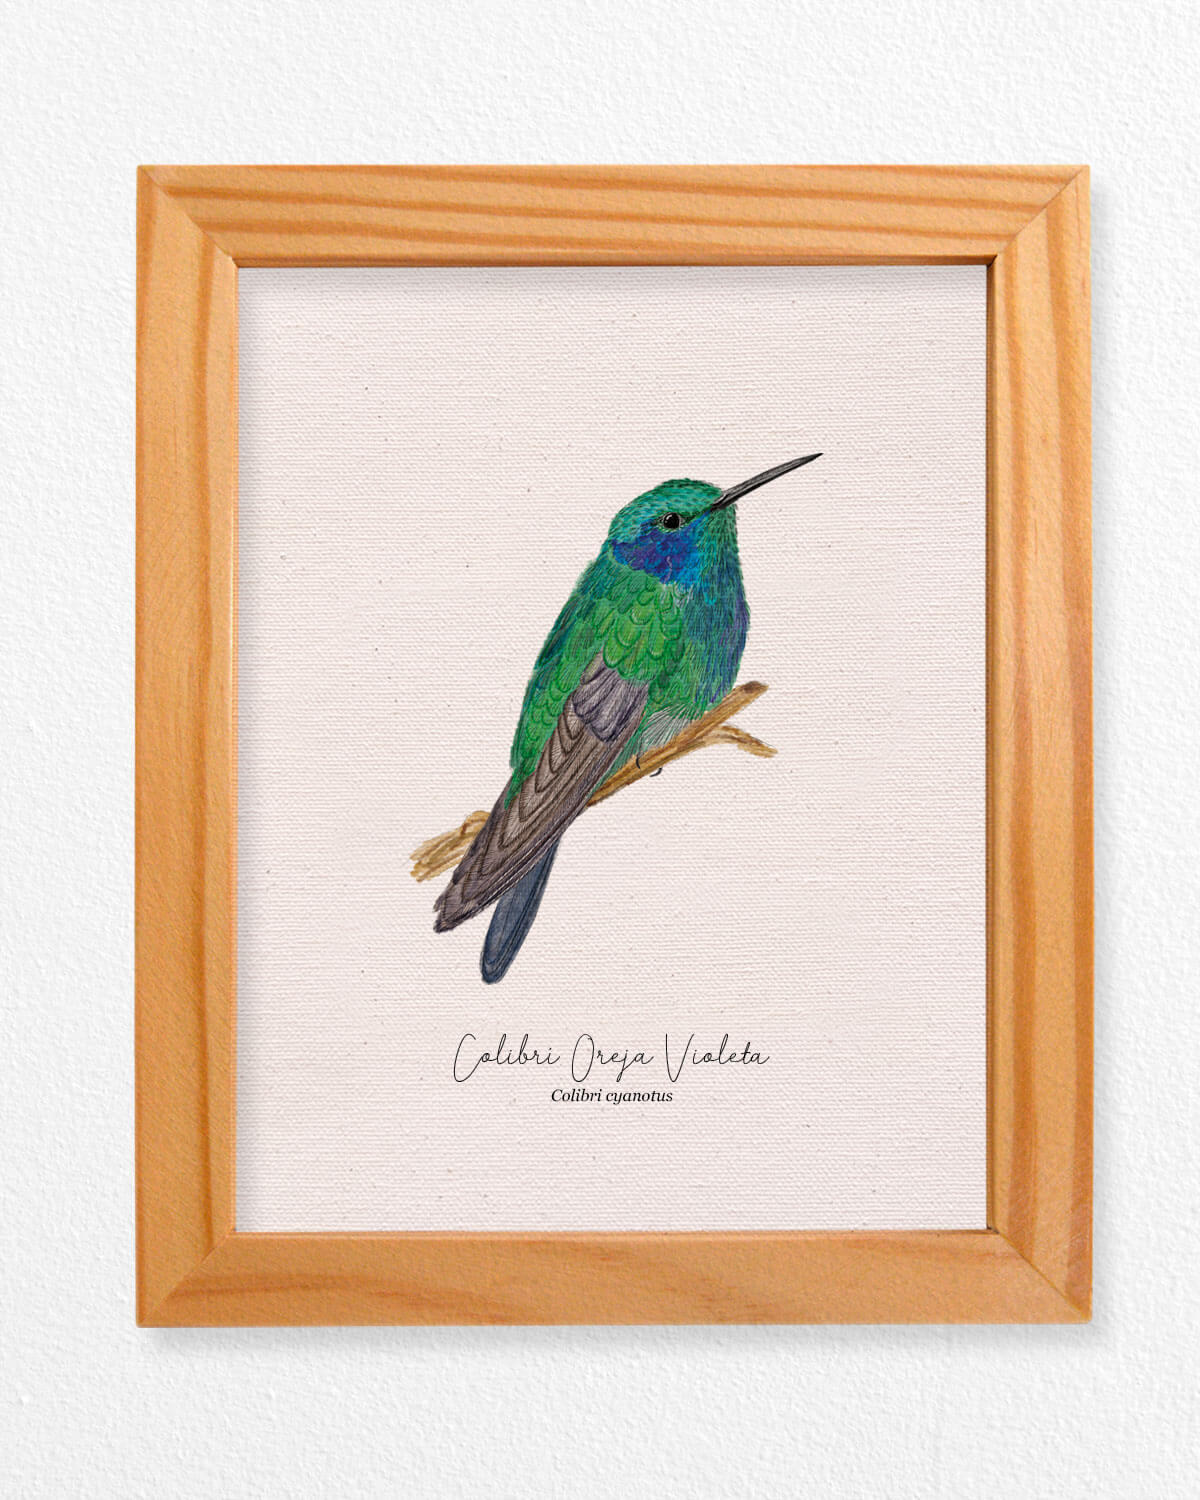 Colibri Oreja Violeta ave colombia aves de colombia cuadros regalos souvenirs colombianos Colombia arte artesanías mapas postales decoracion